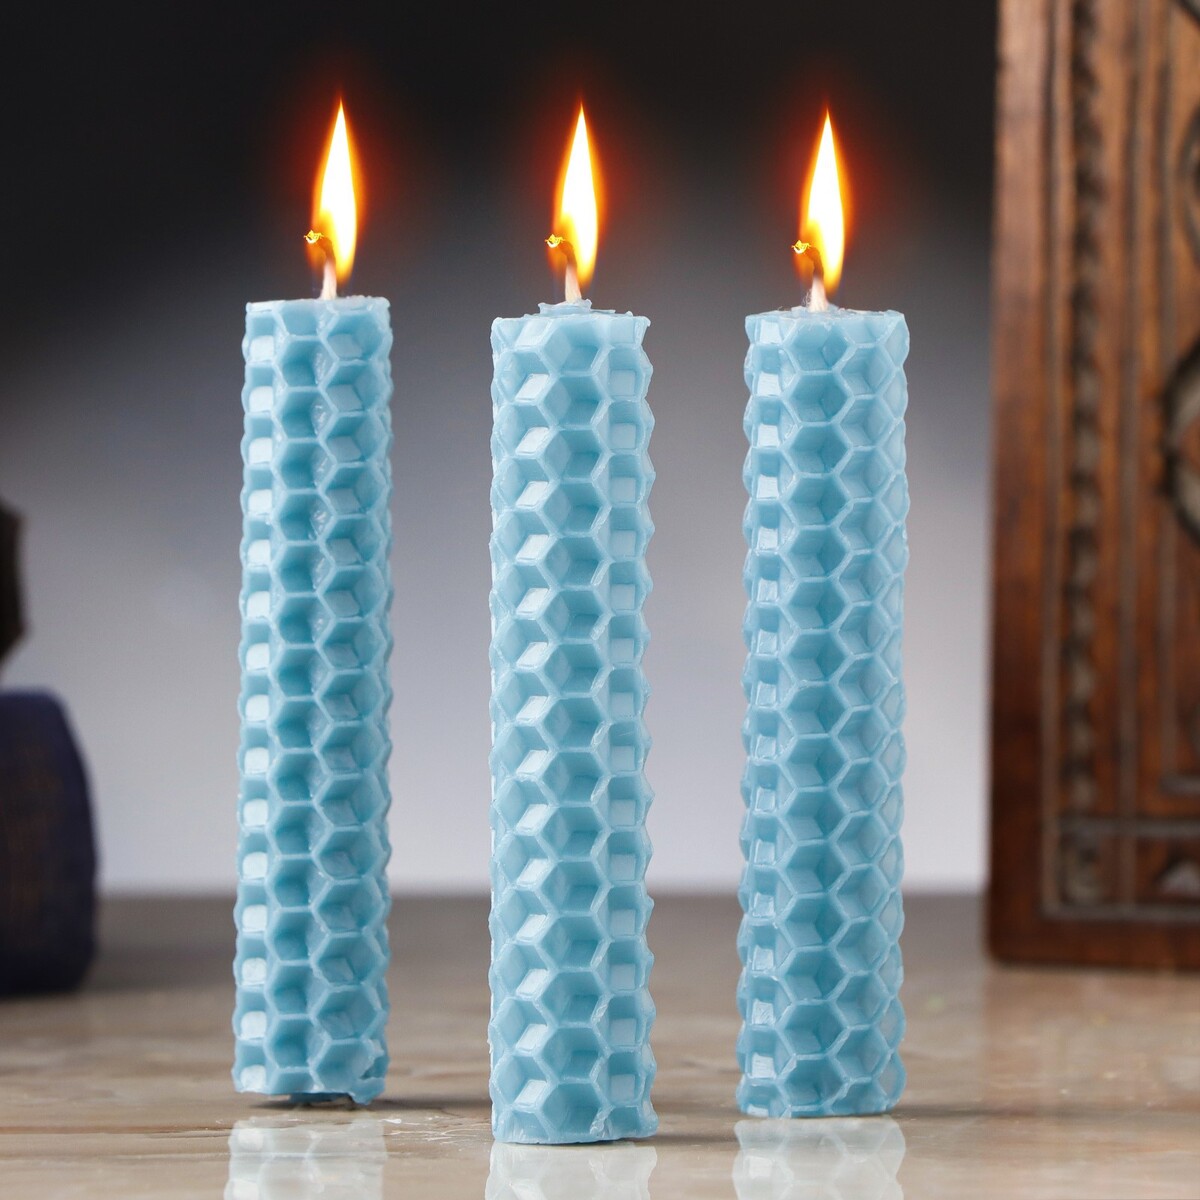 Набор свечей из вощины родные и токсичные иногда цена общения с родным человеком здоровье спокойствие и благополучие